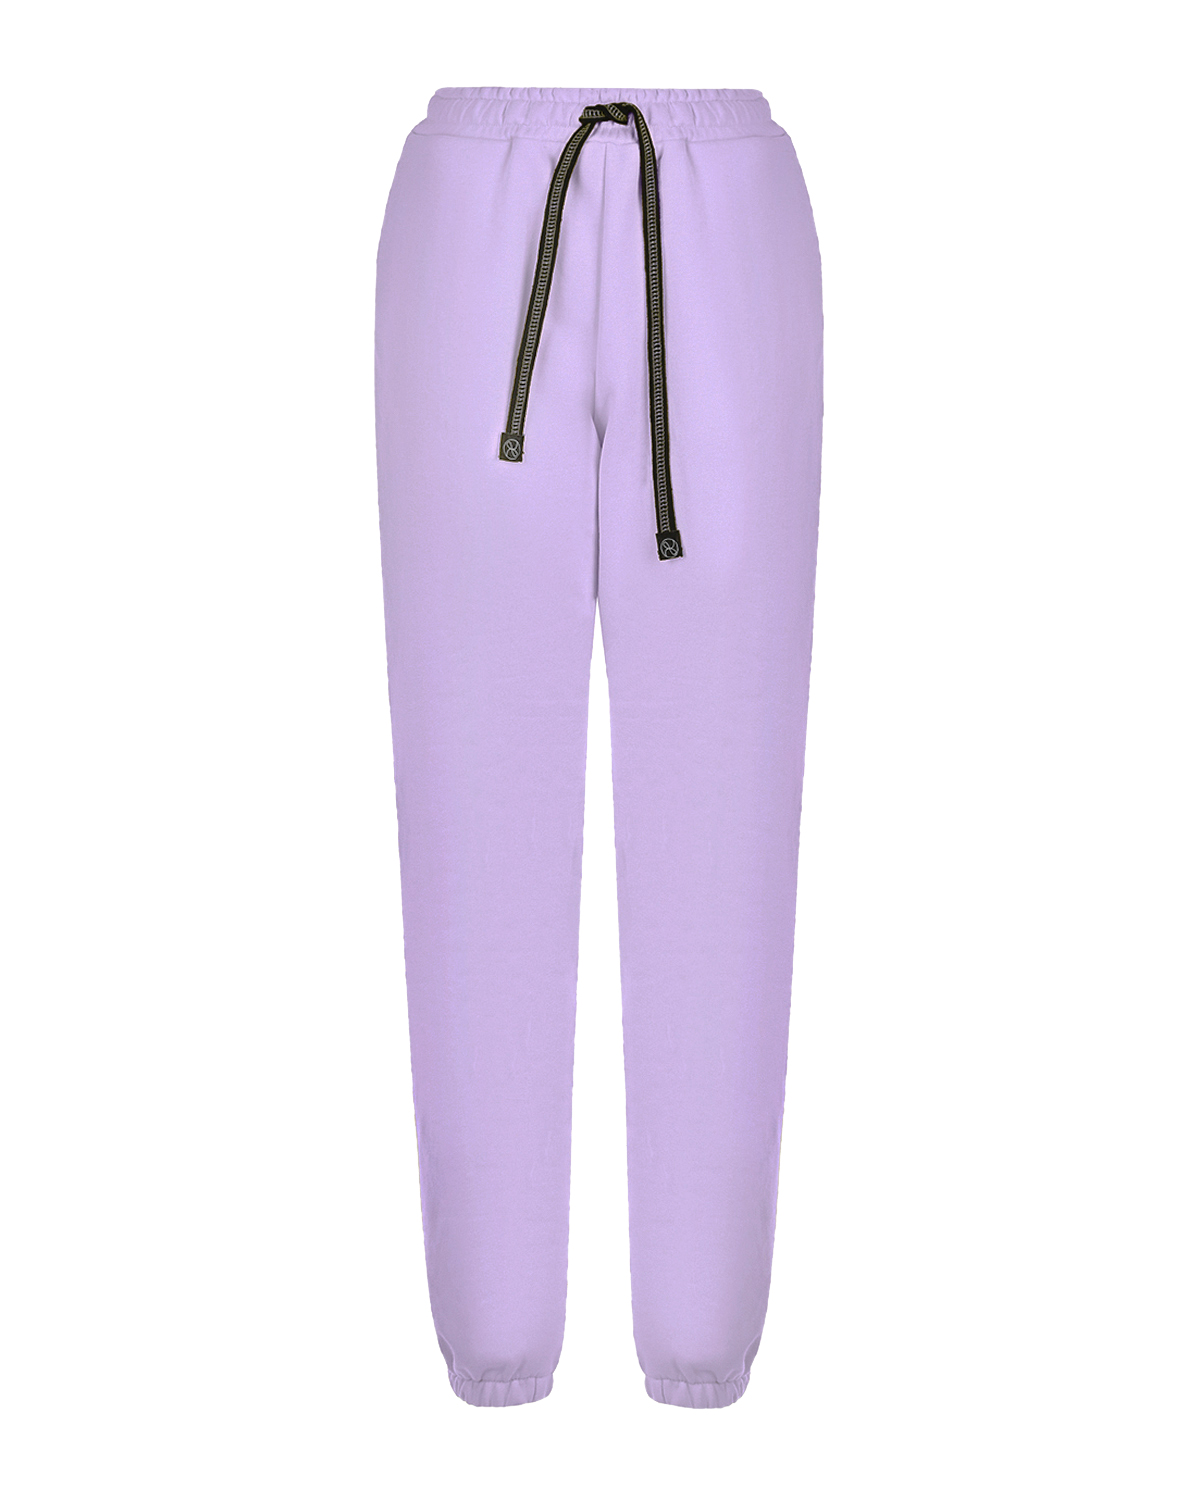 Сиреневые трикотажные брюки Dan Maralex, размер 42, цвет сиреневый - фото 1